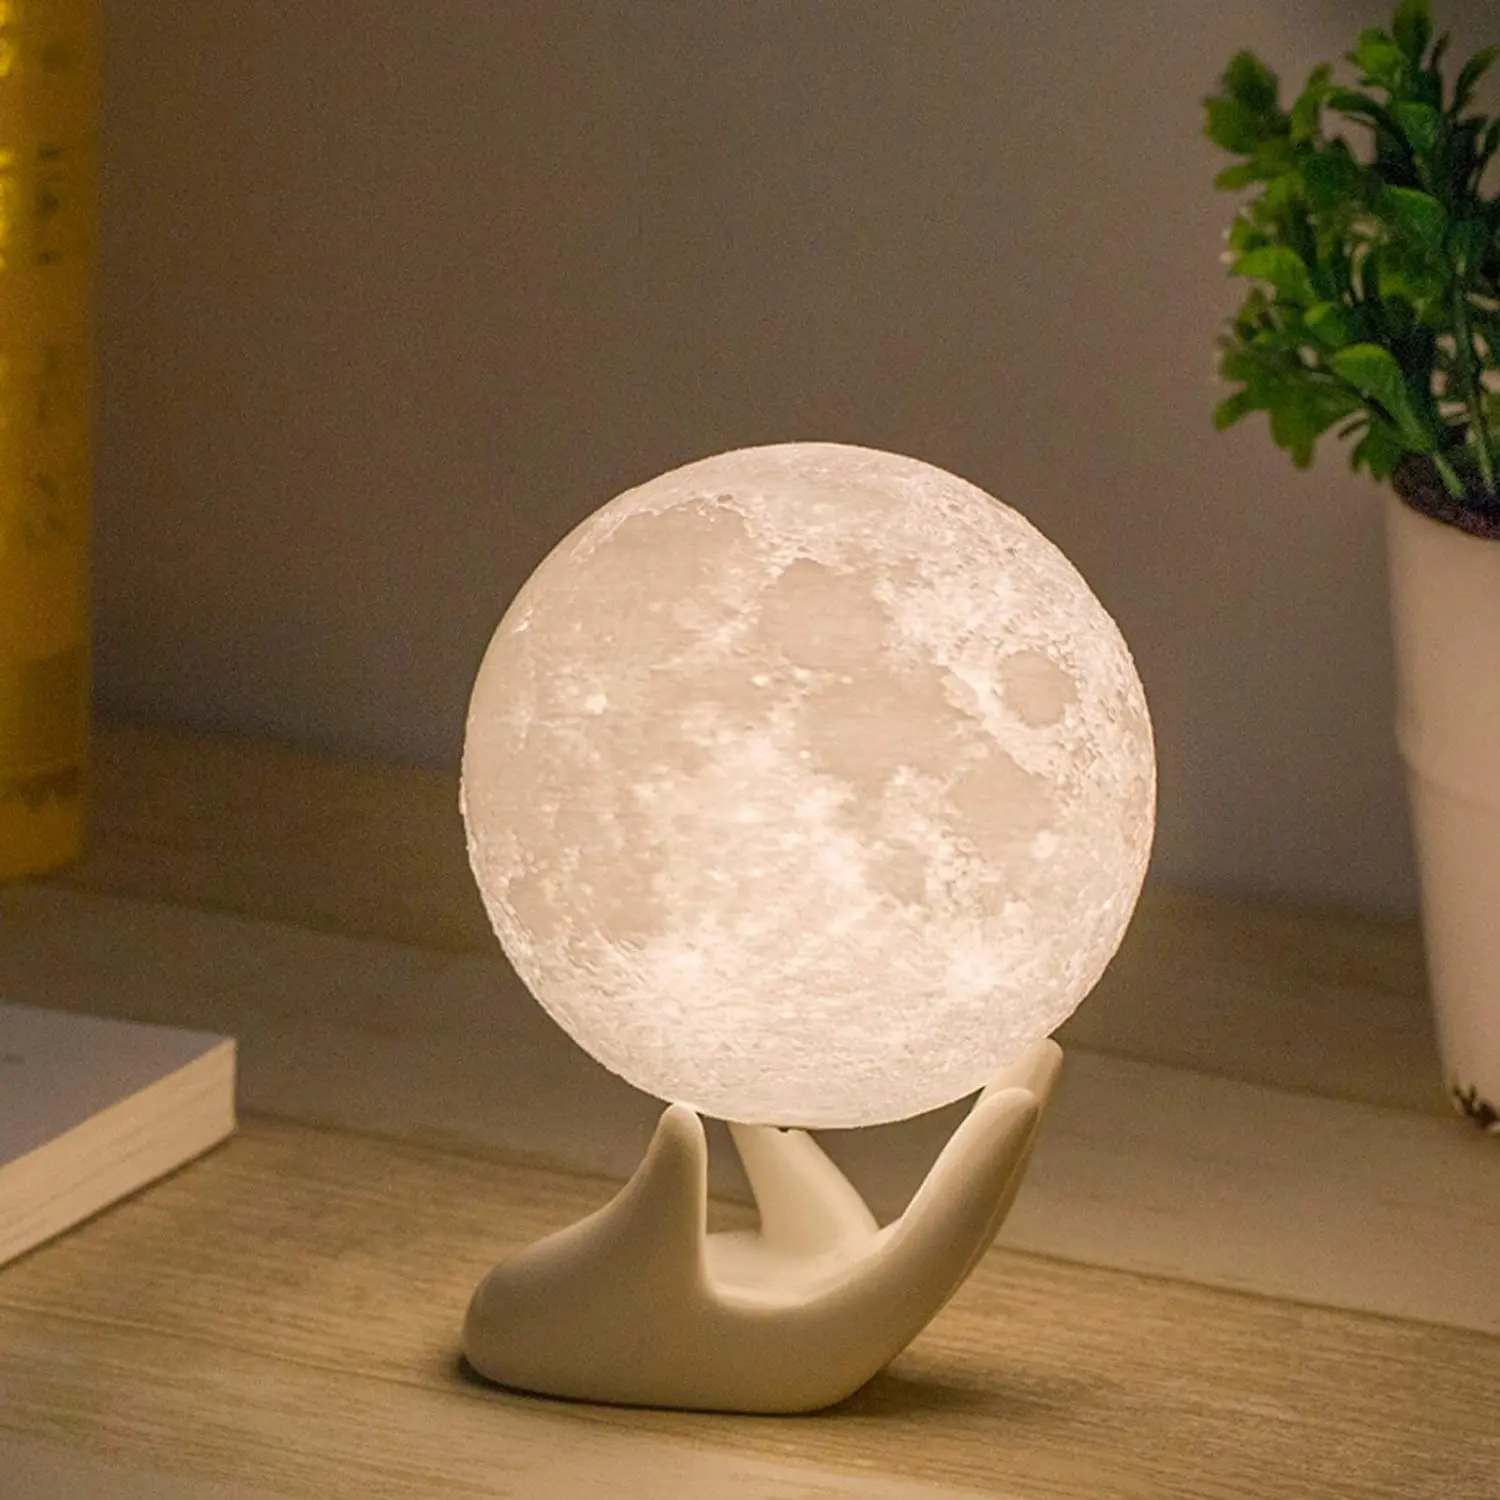 Lampu Bulan Cetak 3D Lampu Malam Anak-anak Lampu Malam 16 Warna LED 3D Lampu Bulan Bintang dengan Dudukan Kayu